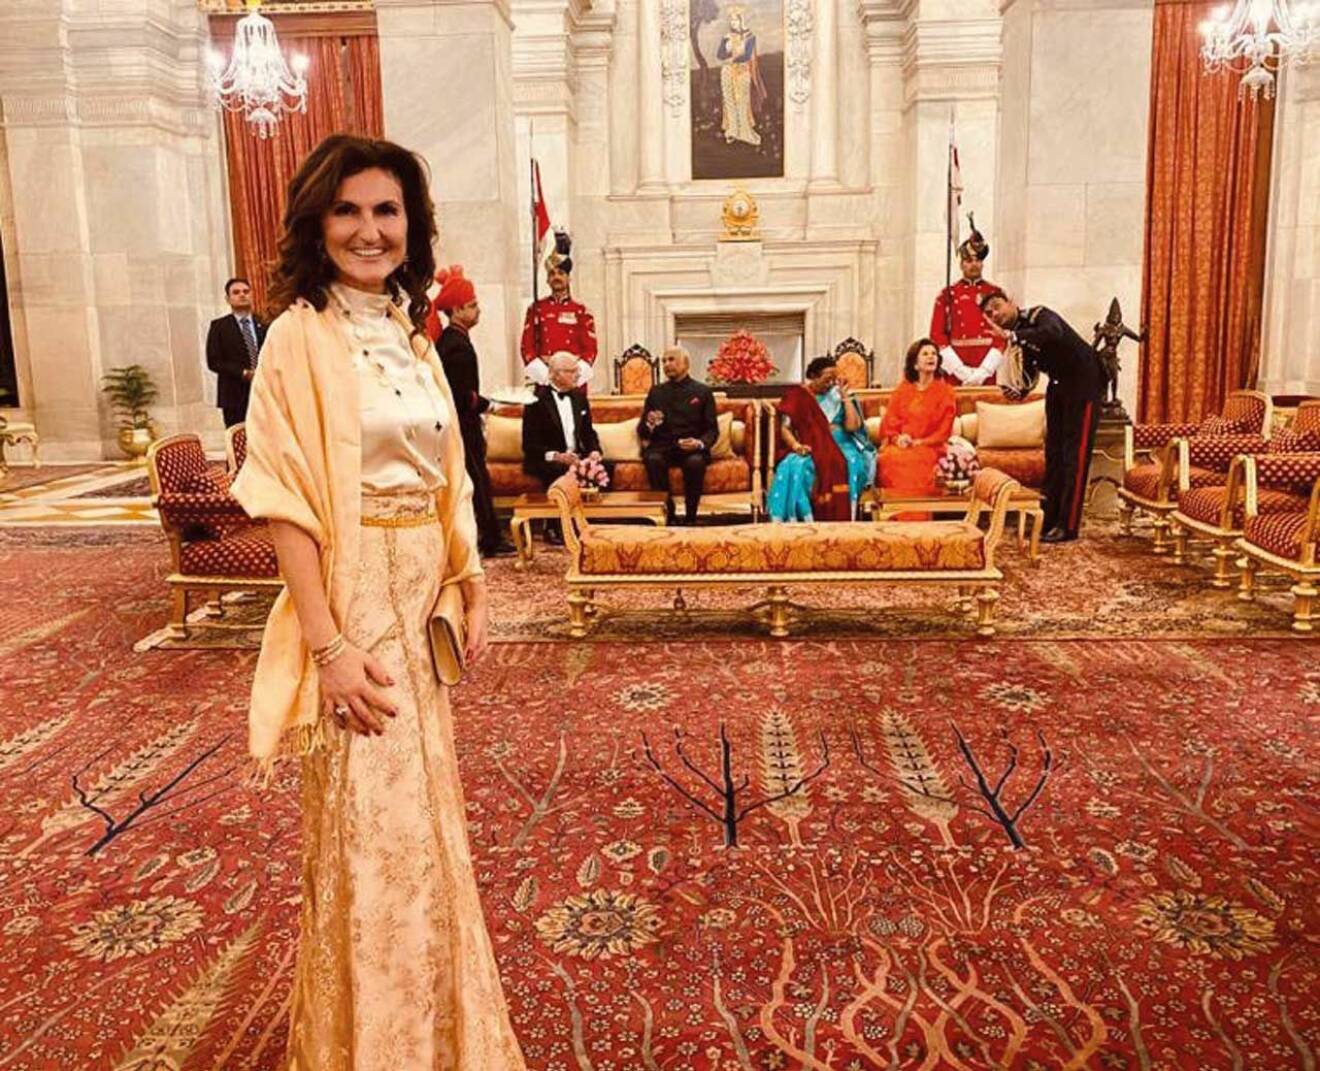 November 2019, statsbesök med kungaparet i Indien. Palatset i New Delhi.